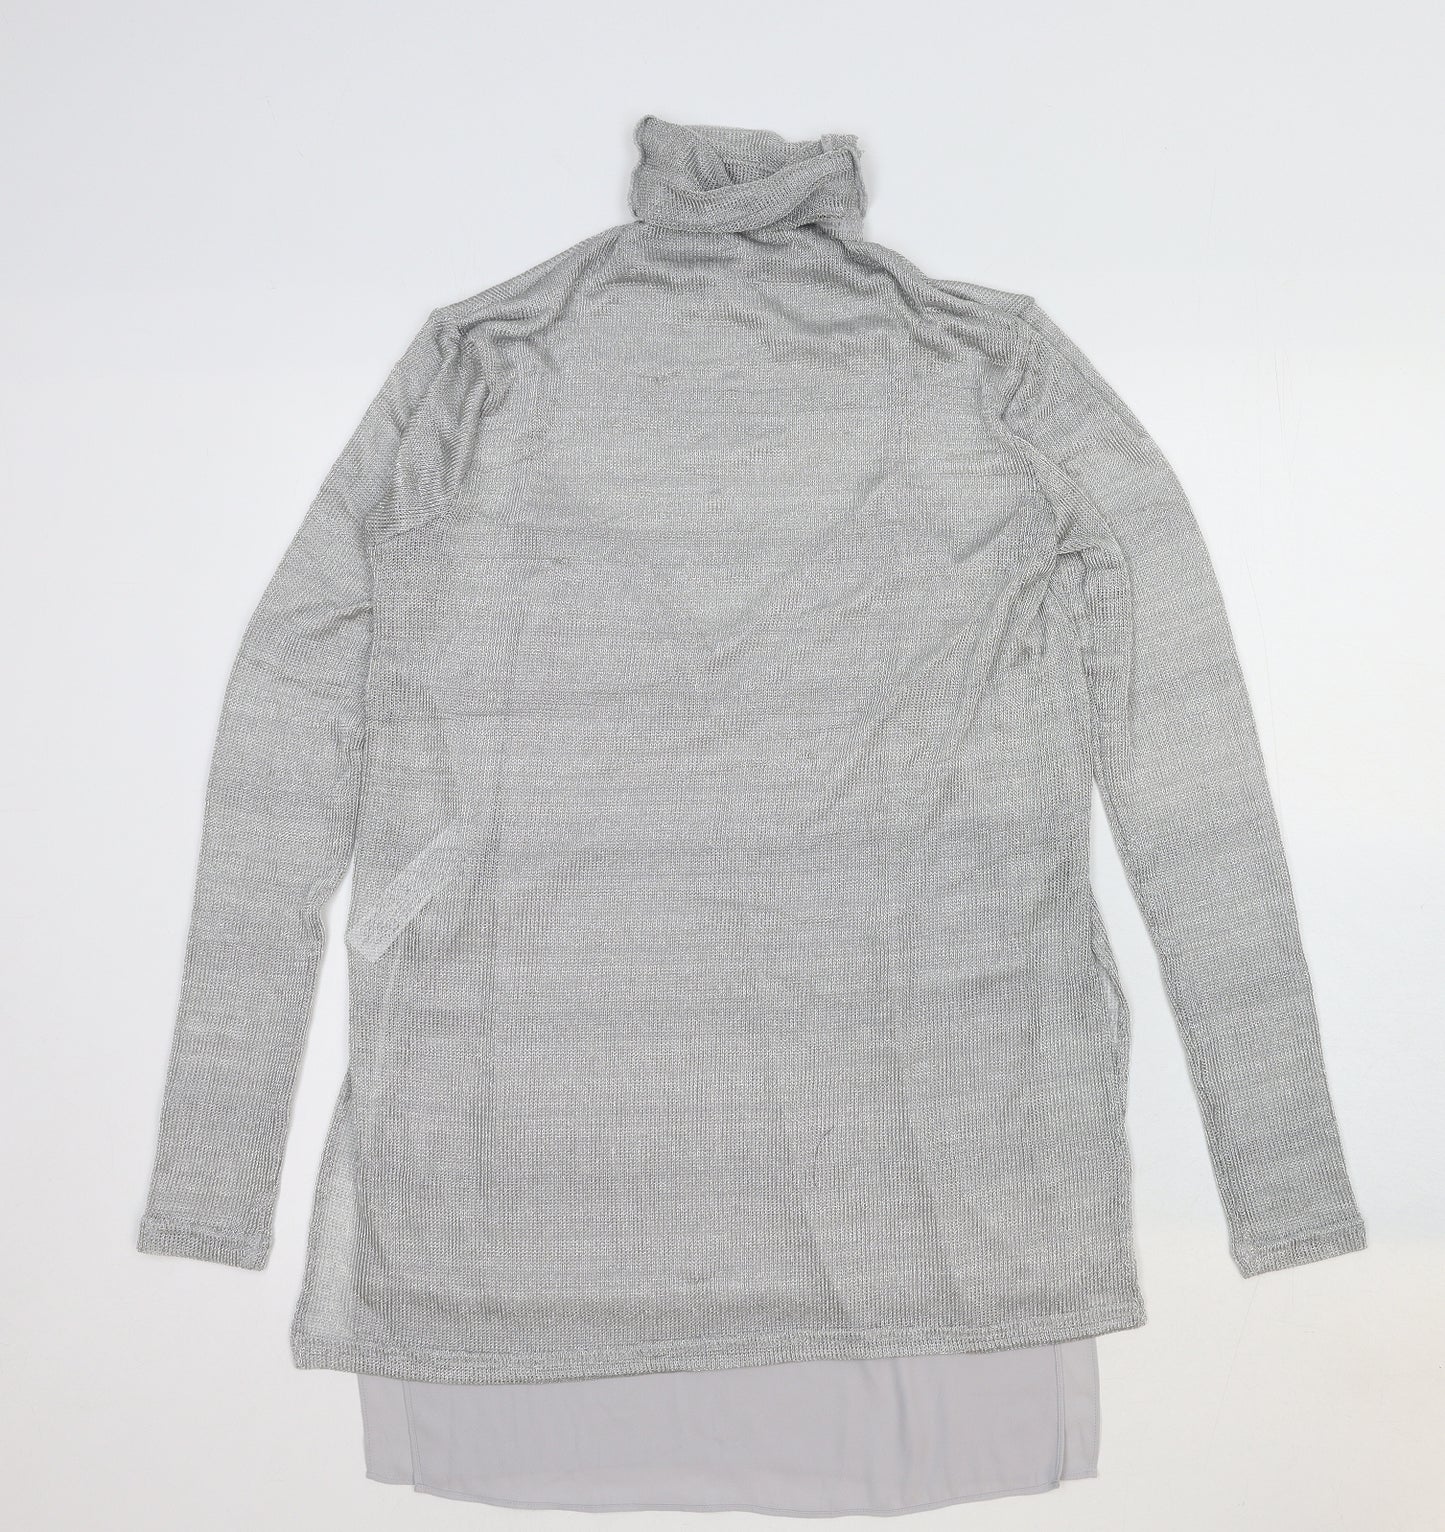 Massimo Dutti Womens Grey Viscose Basic Blouse Size S Roll Neck